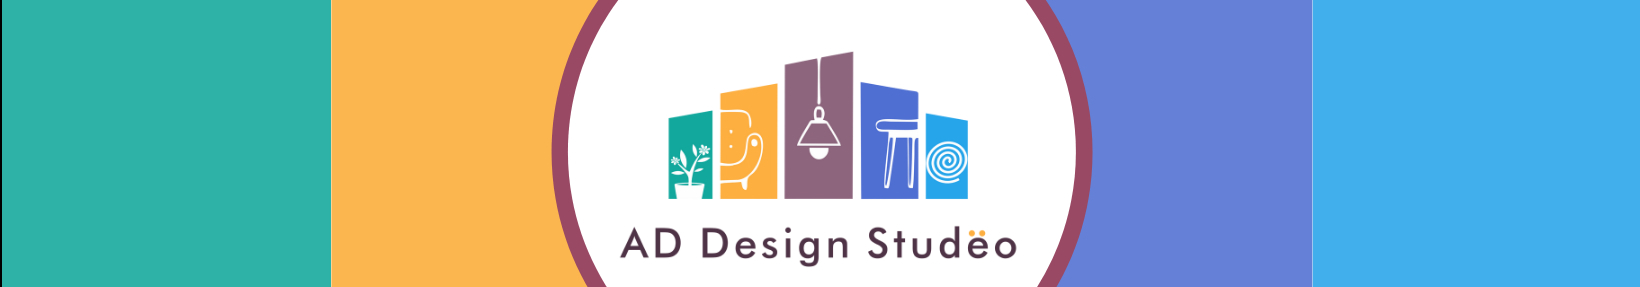 AD Design Studeo's profile banner